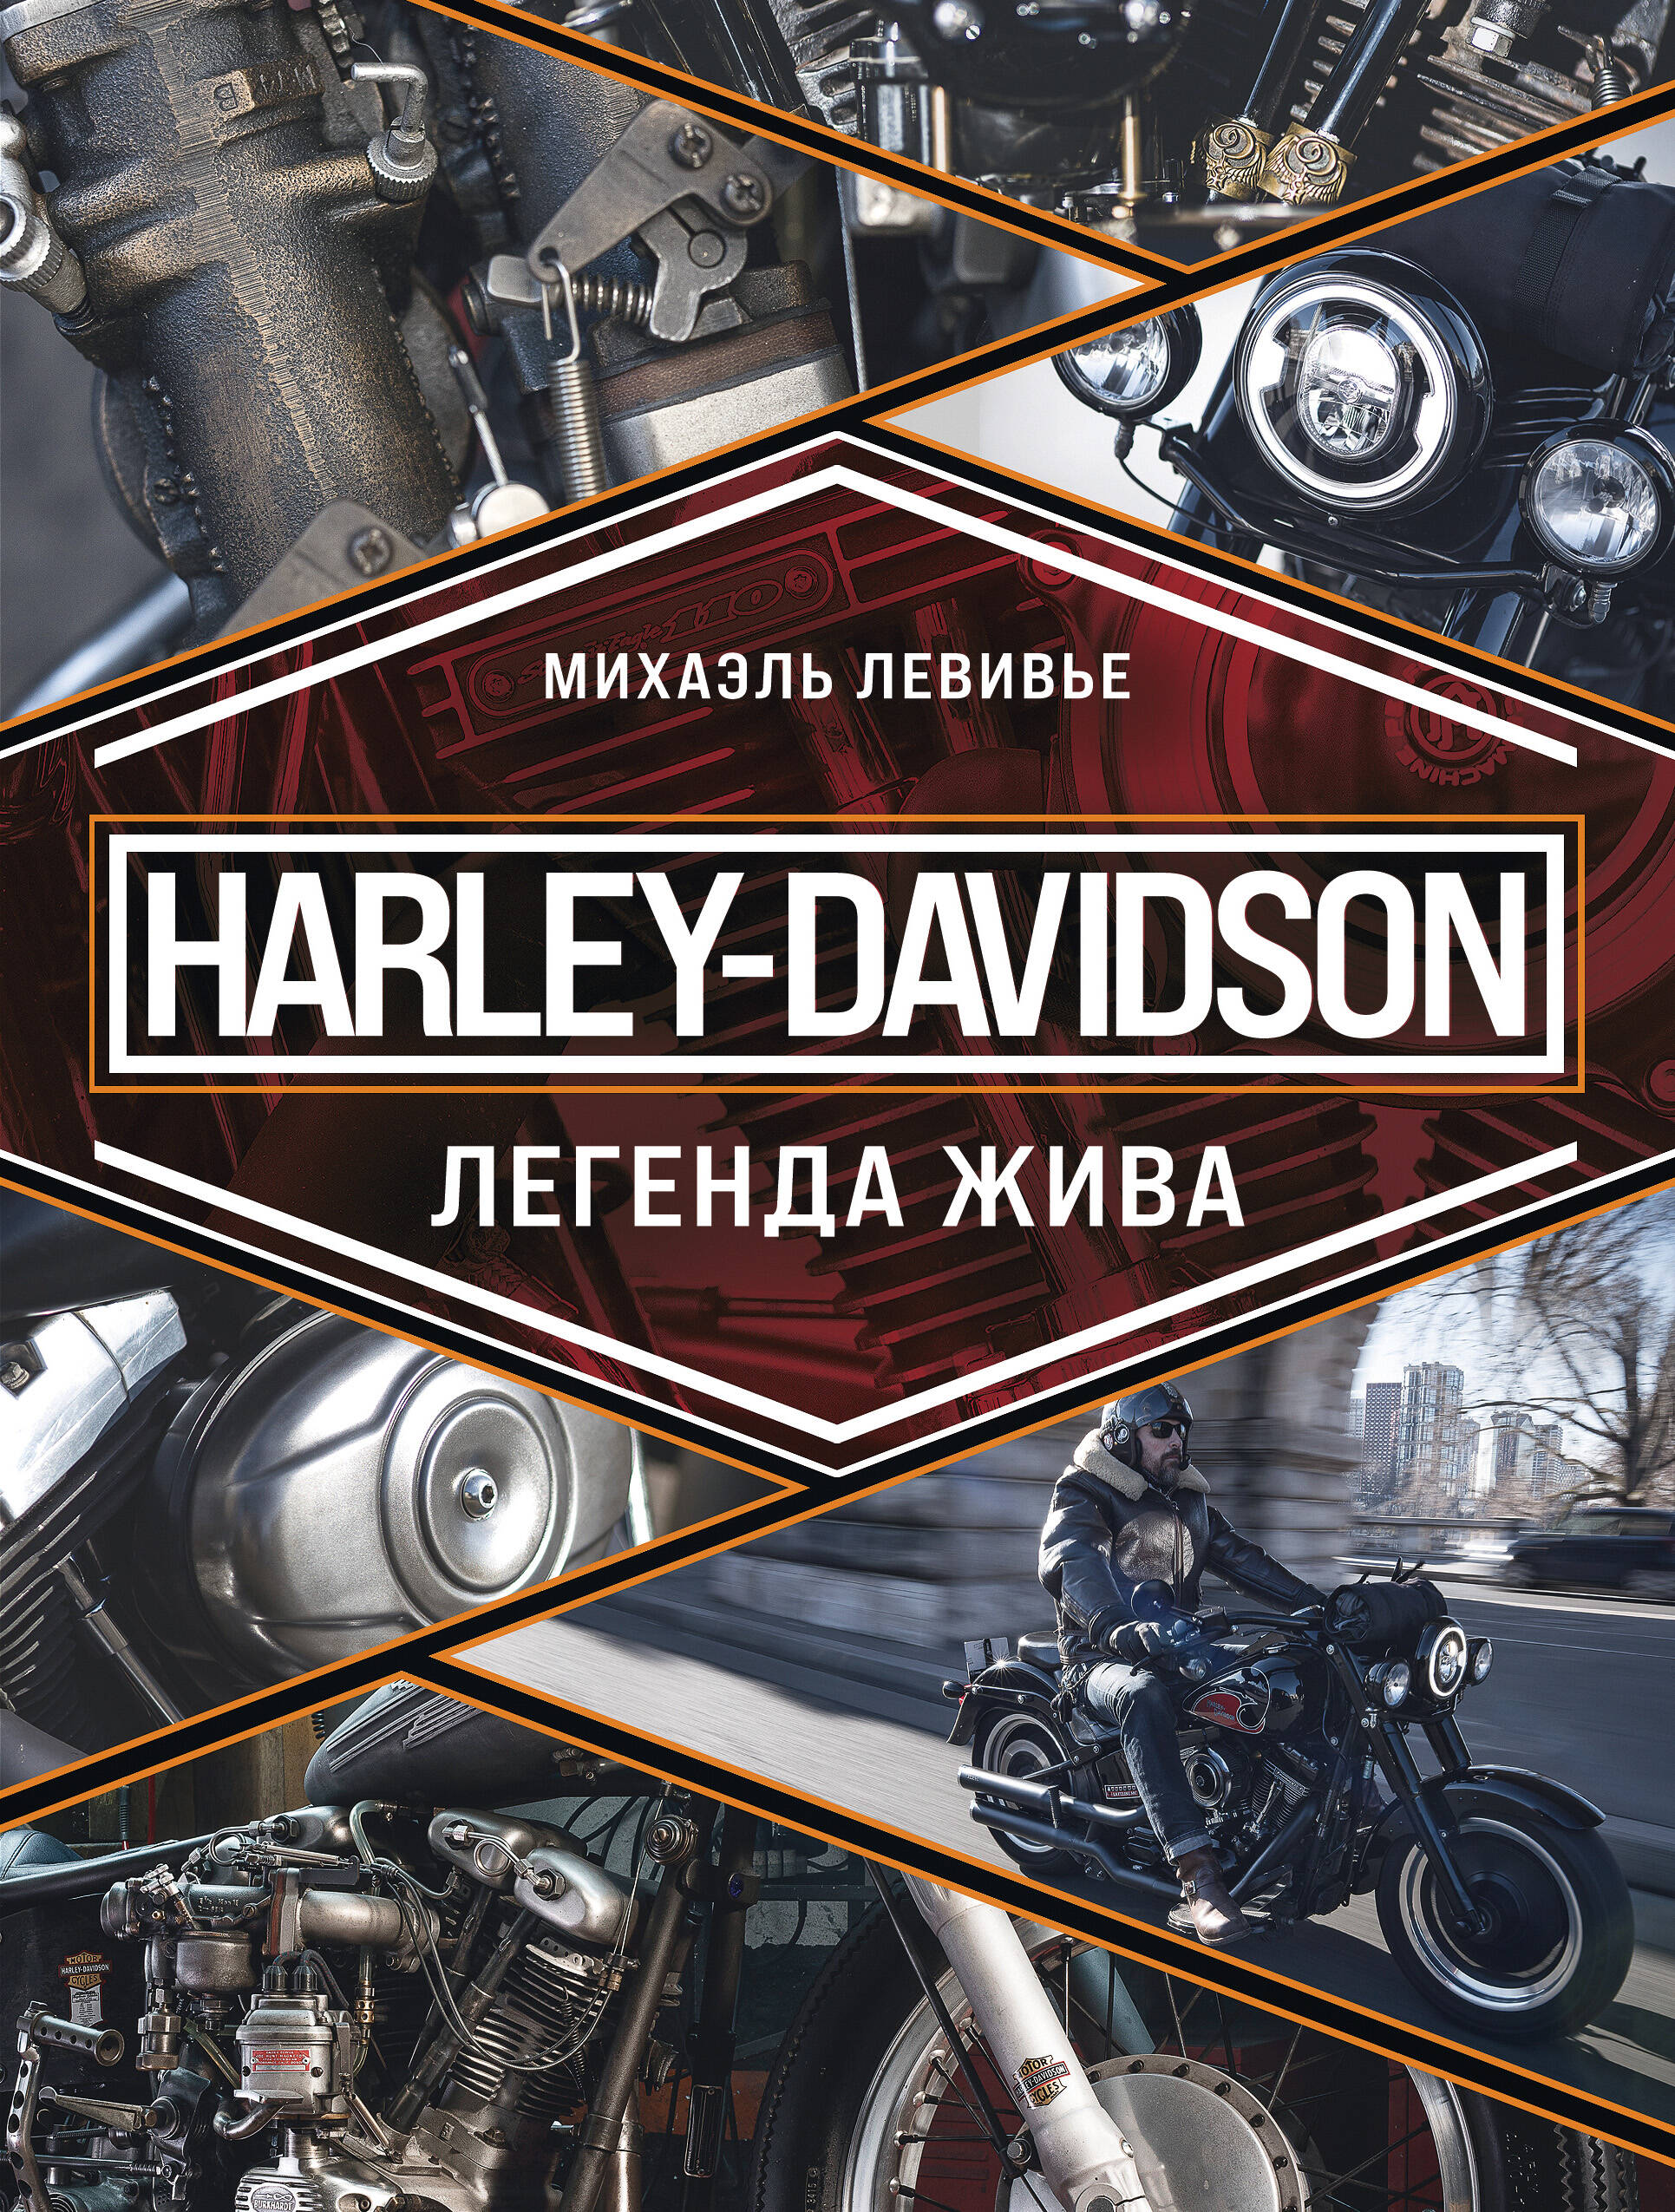 Левивье Михаэль Harley-Davidson. Легенда жива левивье михаэль harley davidson легенда жива